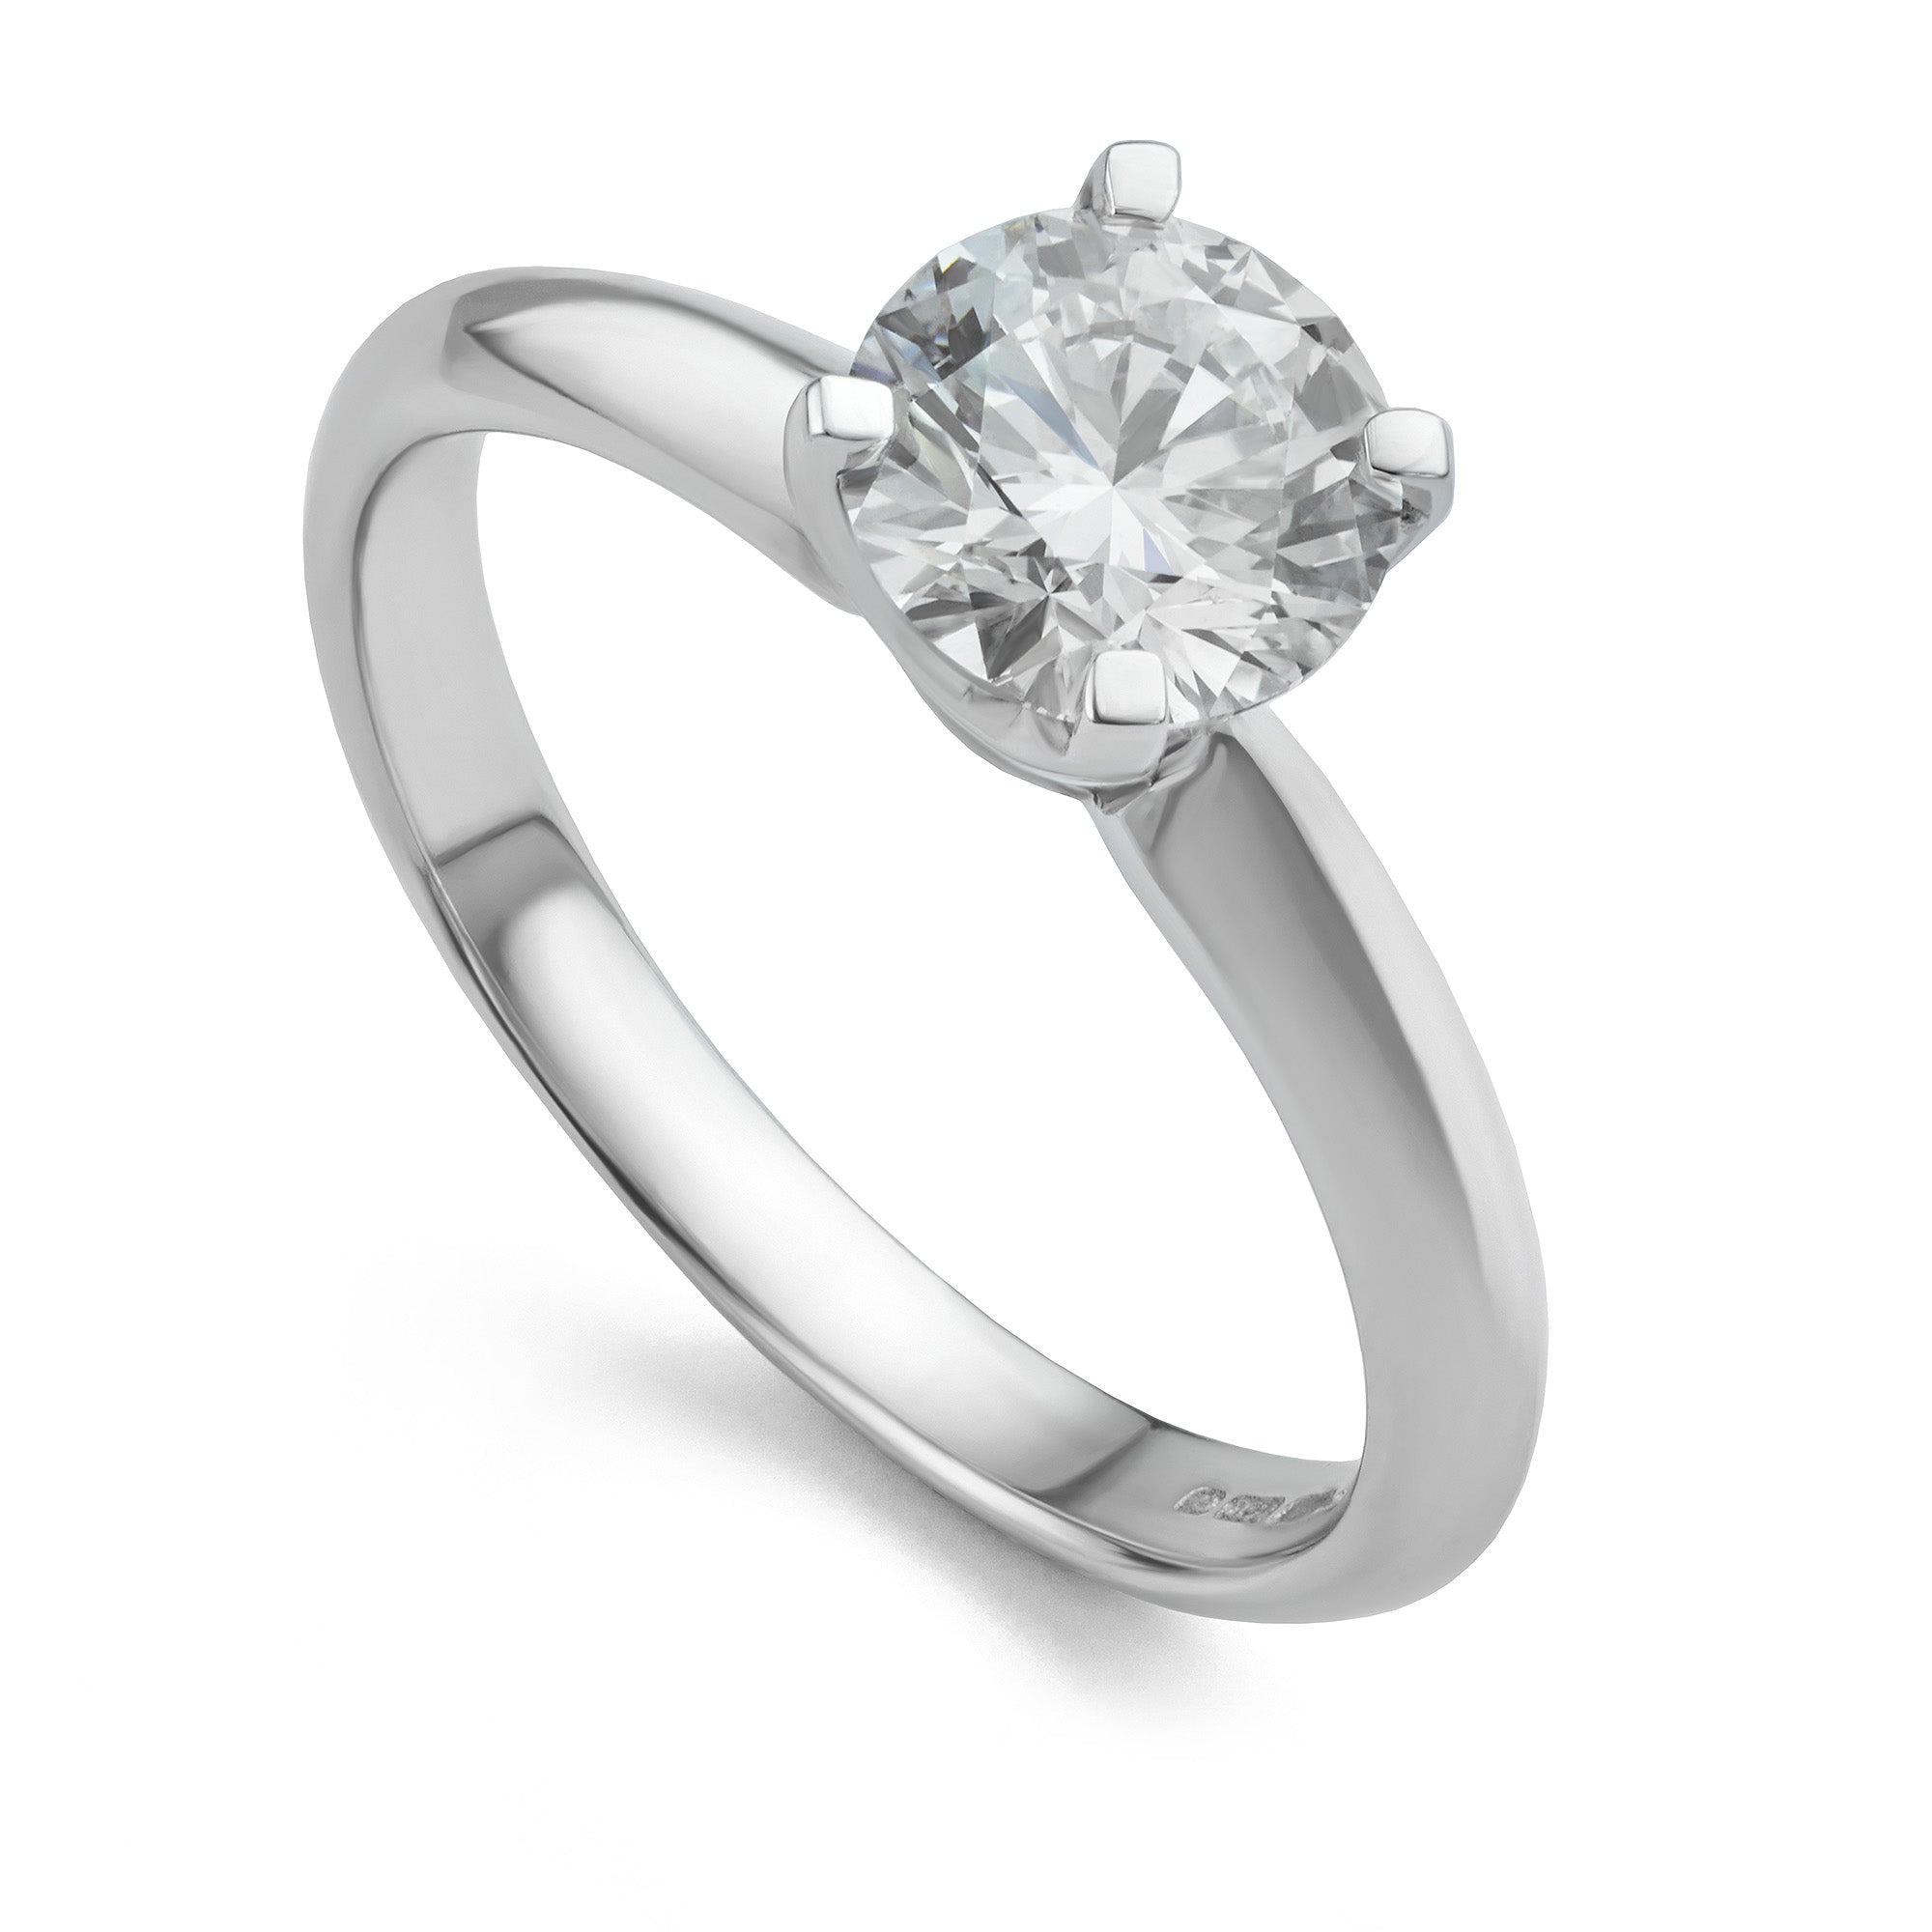 Kensington 1 carat lab-grown diamond engagement ring